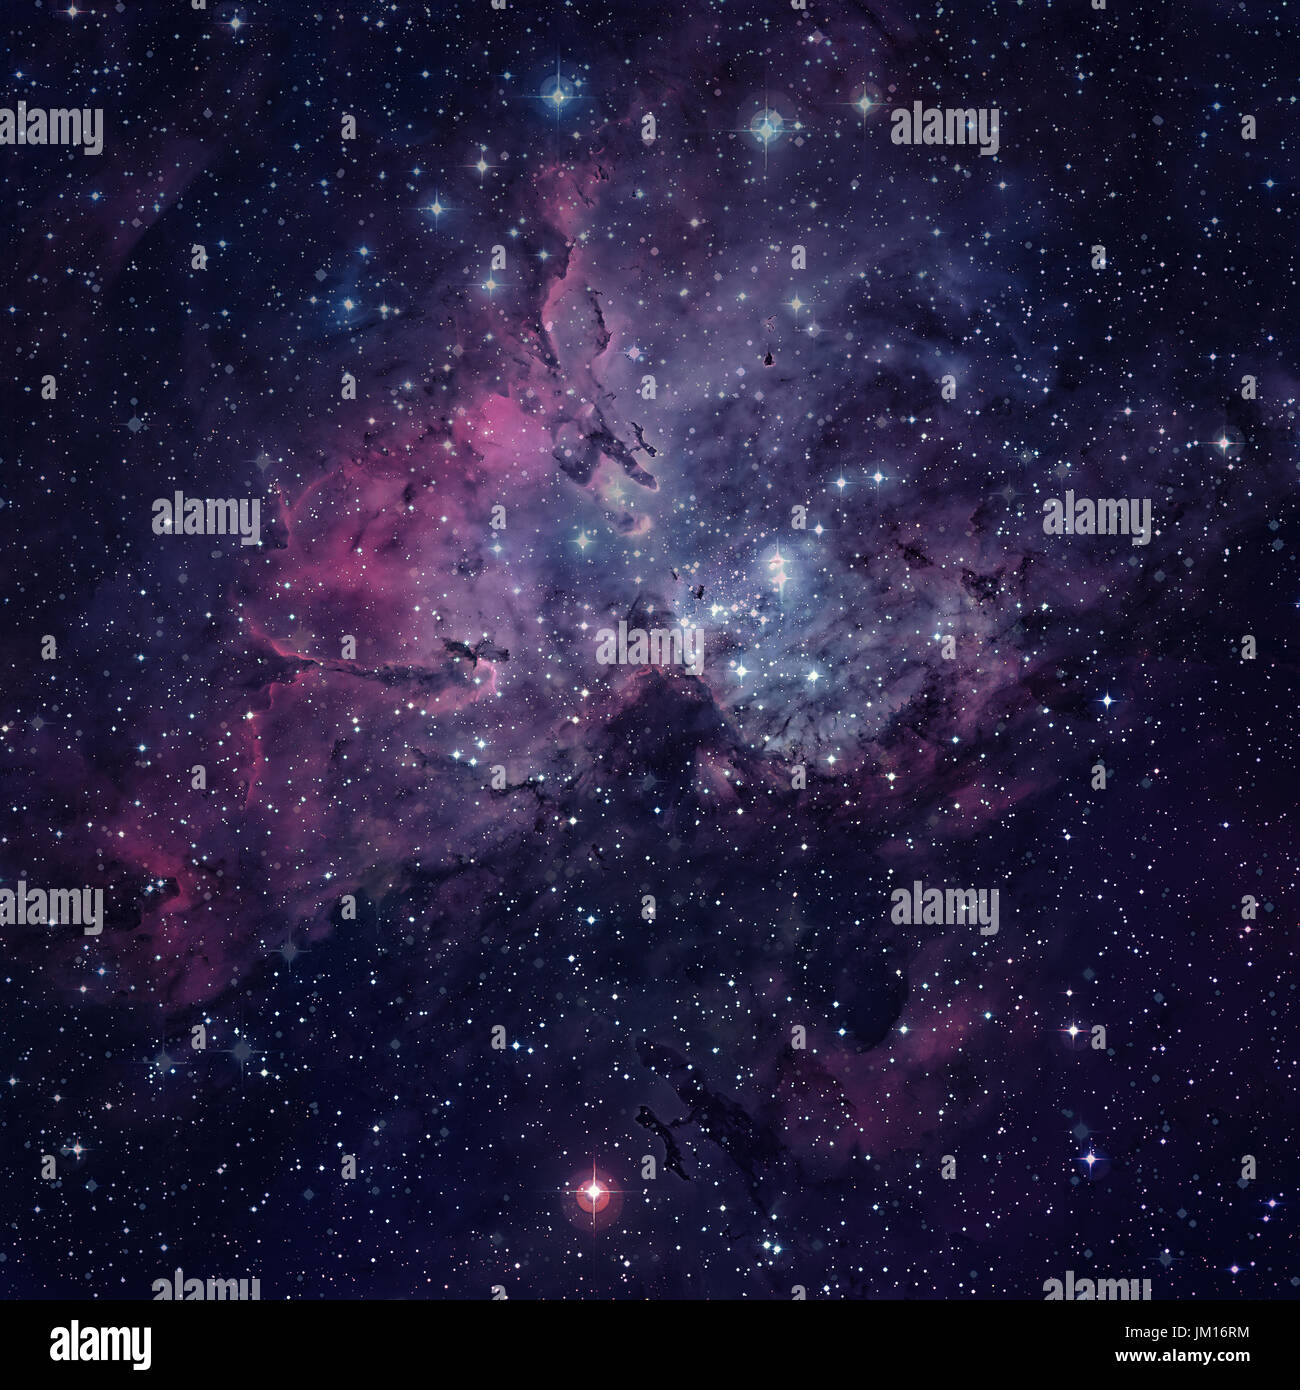 La Nébuleuse de l'Aigle, ou Messier 16. Au centre, le soi-disant piliers de la création peut être vu. Éléments de cette image fournie par la NASA. Banque D'Images